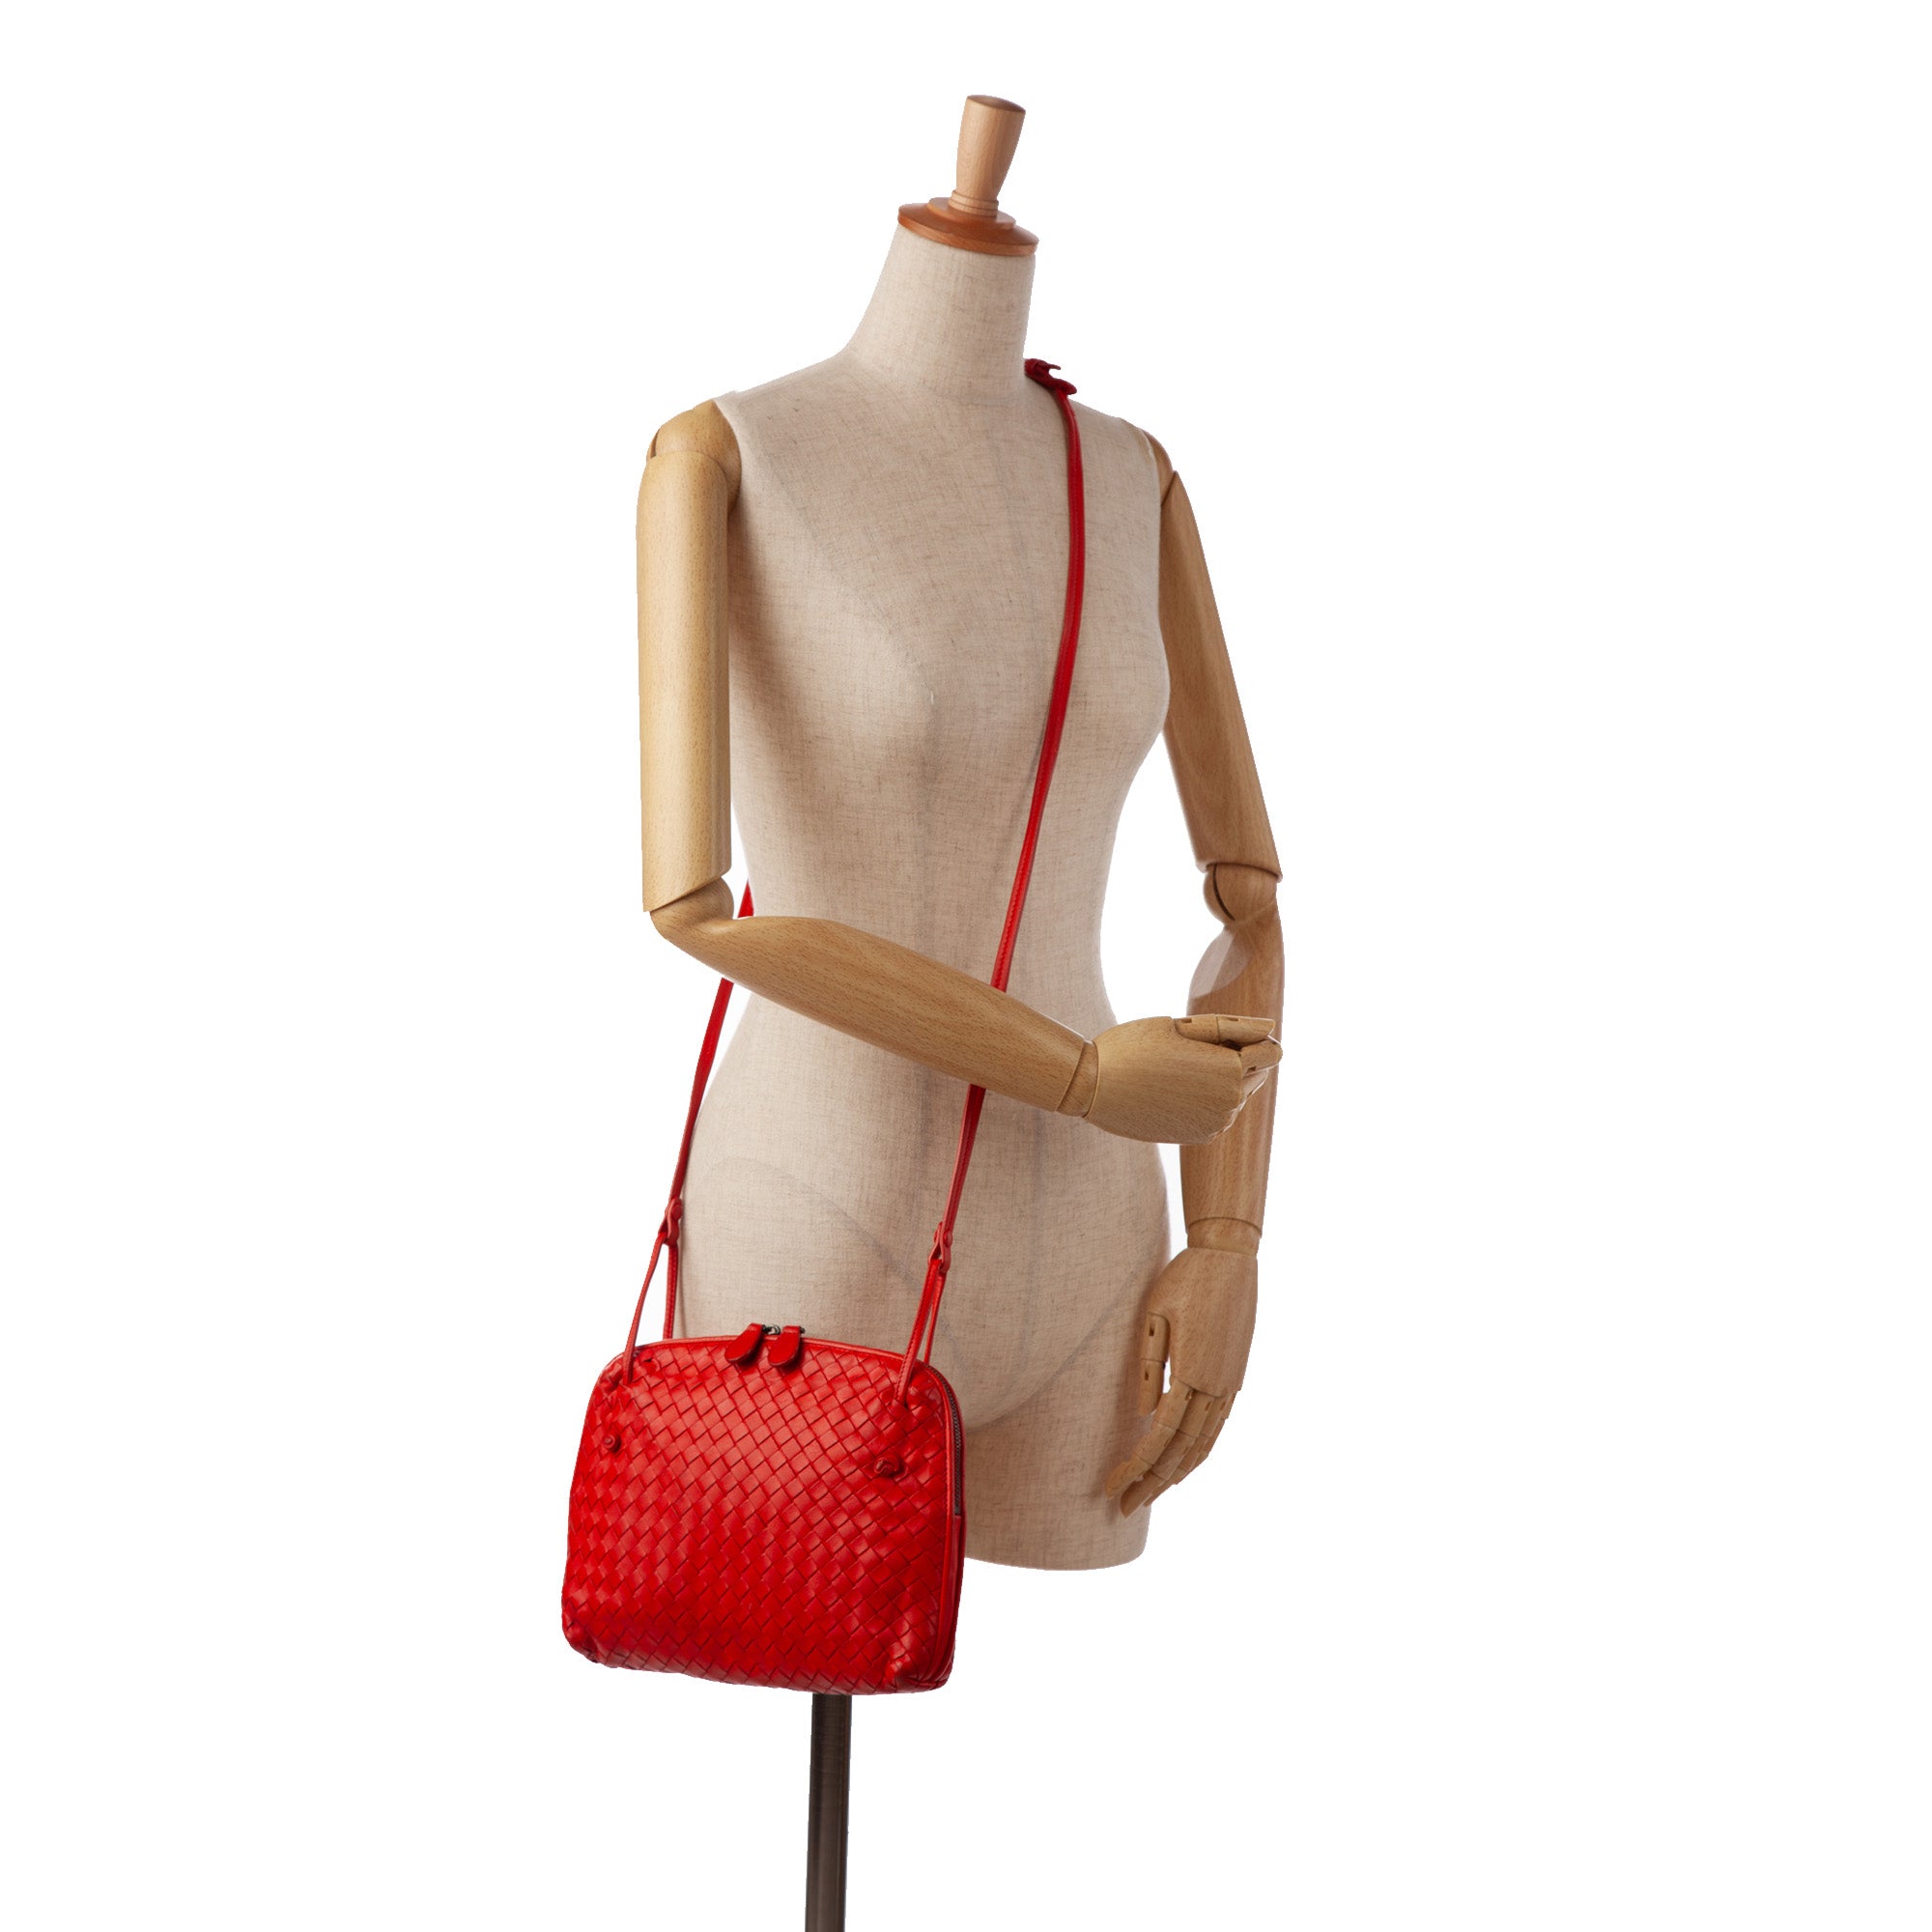 Bottega Veneta Nodini Intrecciato Leather Crossbody Bag In Red